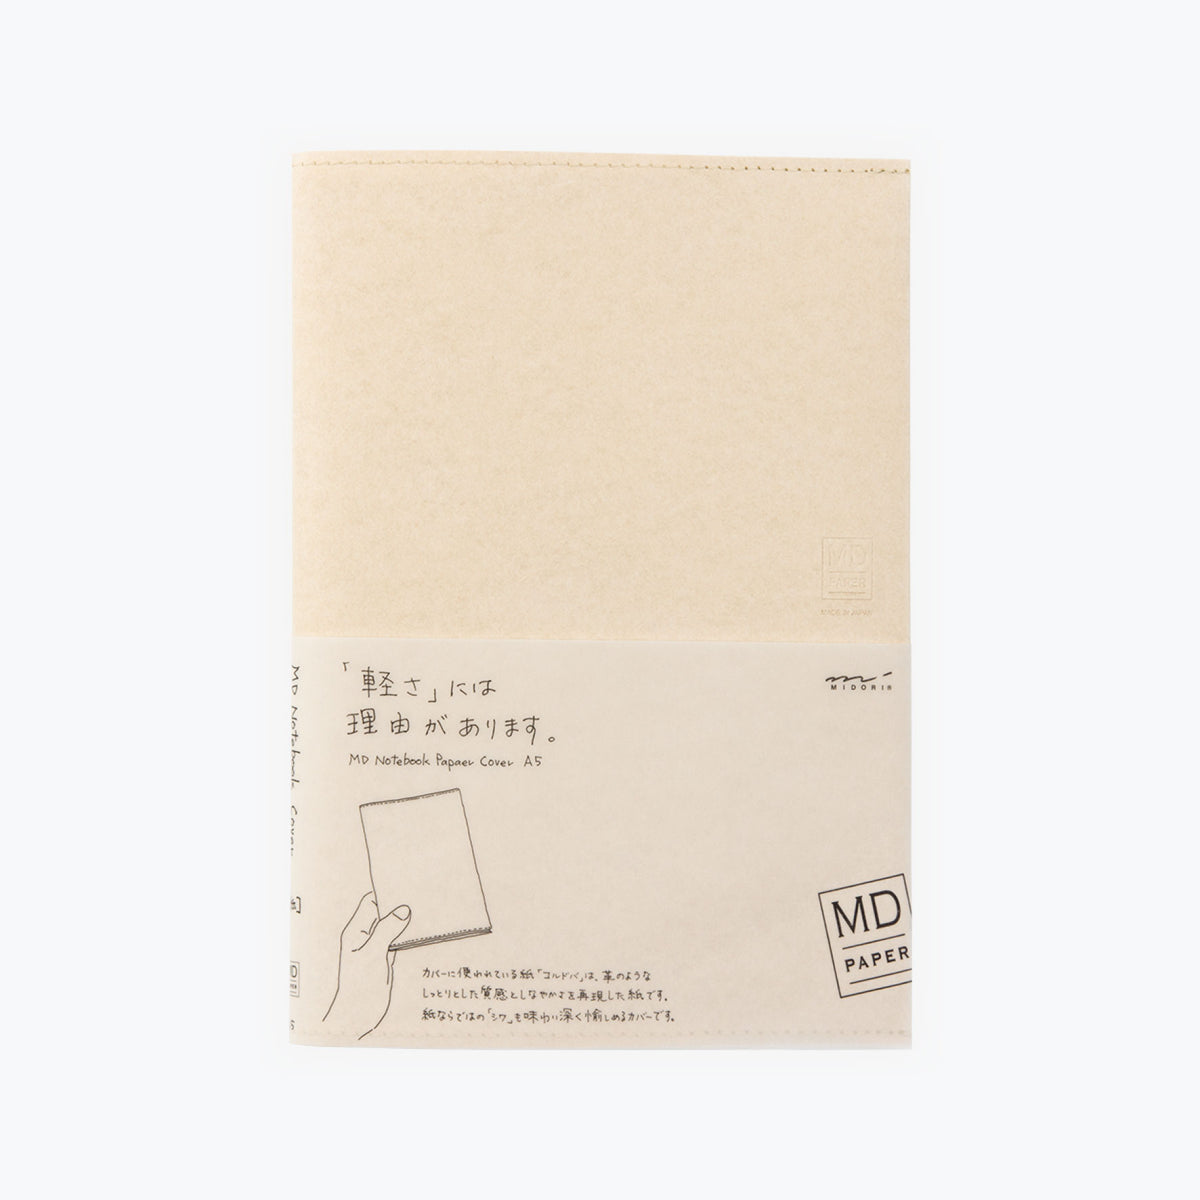 Midori - Notebook Cover - Paper - A5